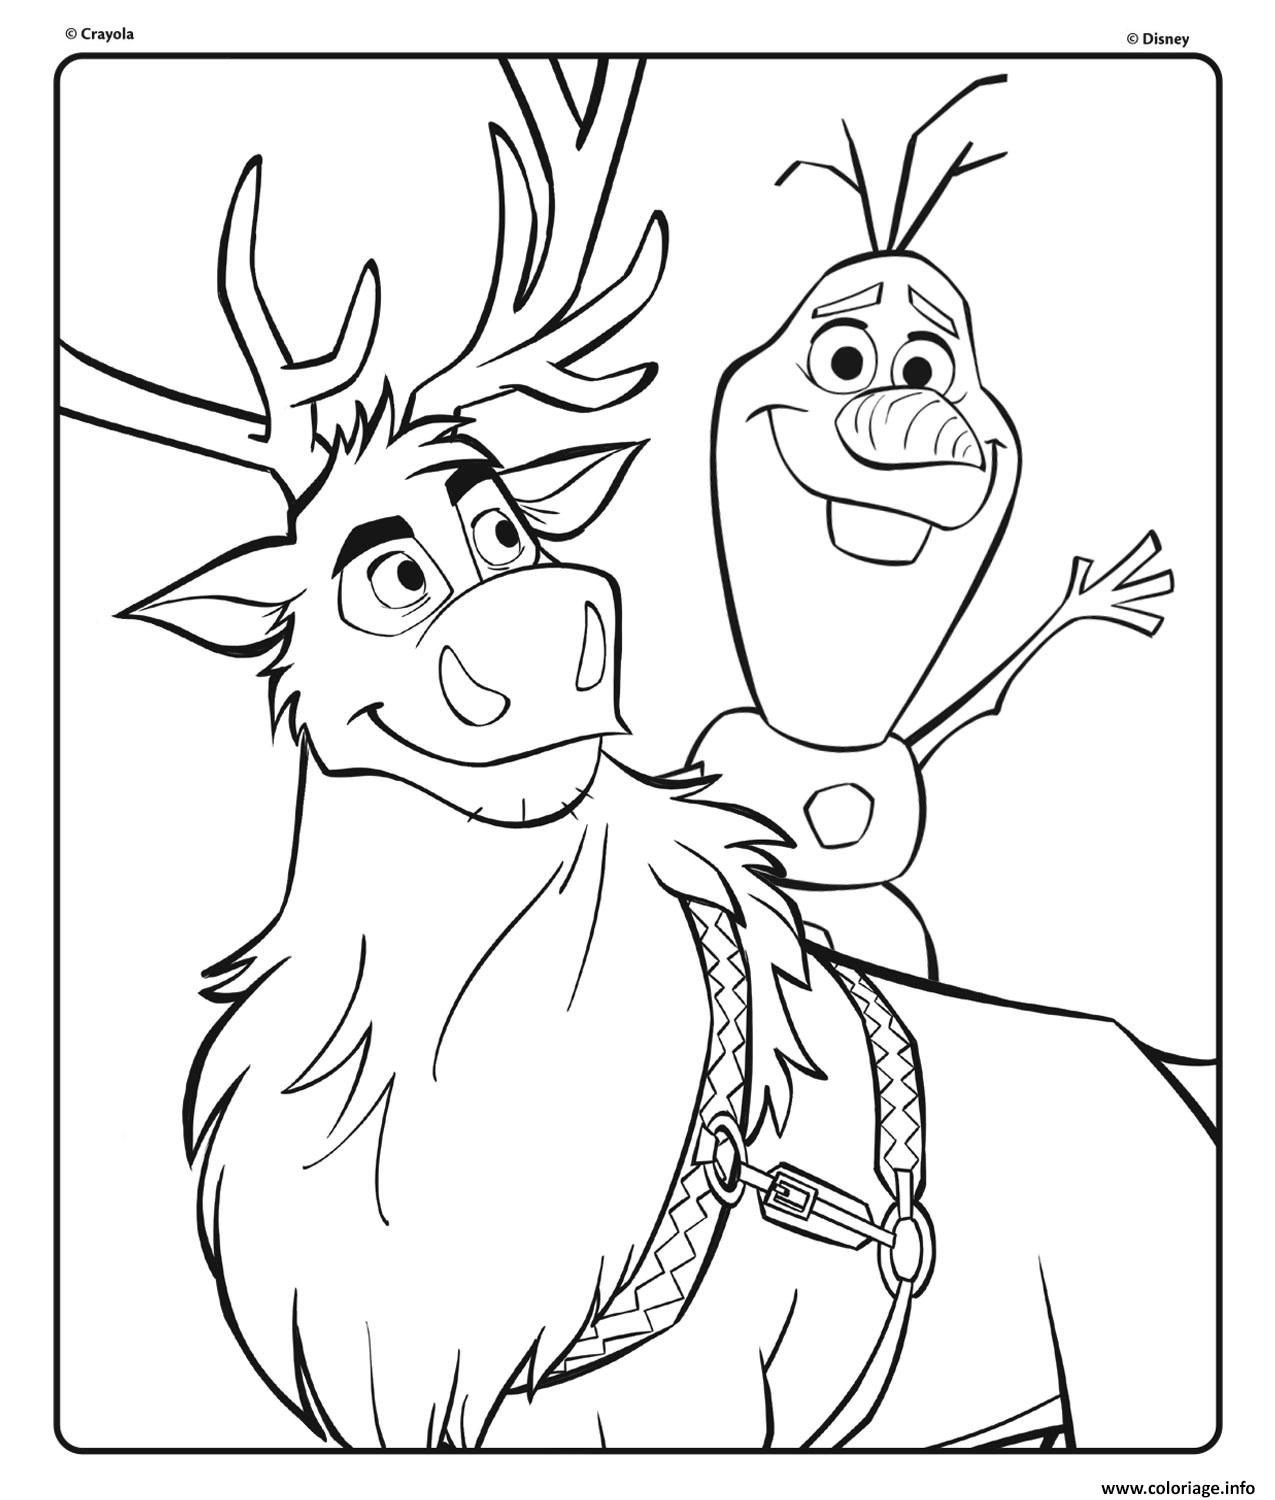 Coloriage Olaf Et Sven De Disney La Reine Des Neiges 2 Dessin à Imprimer